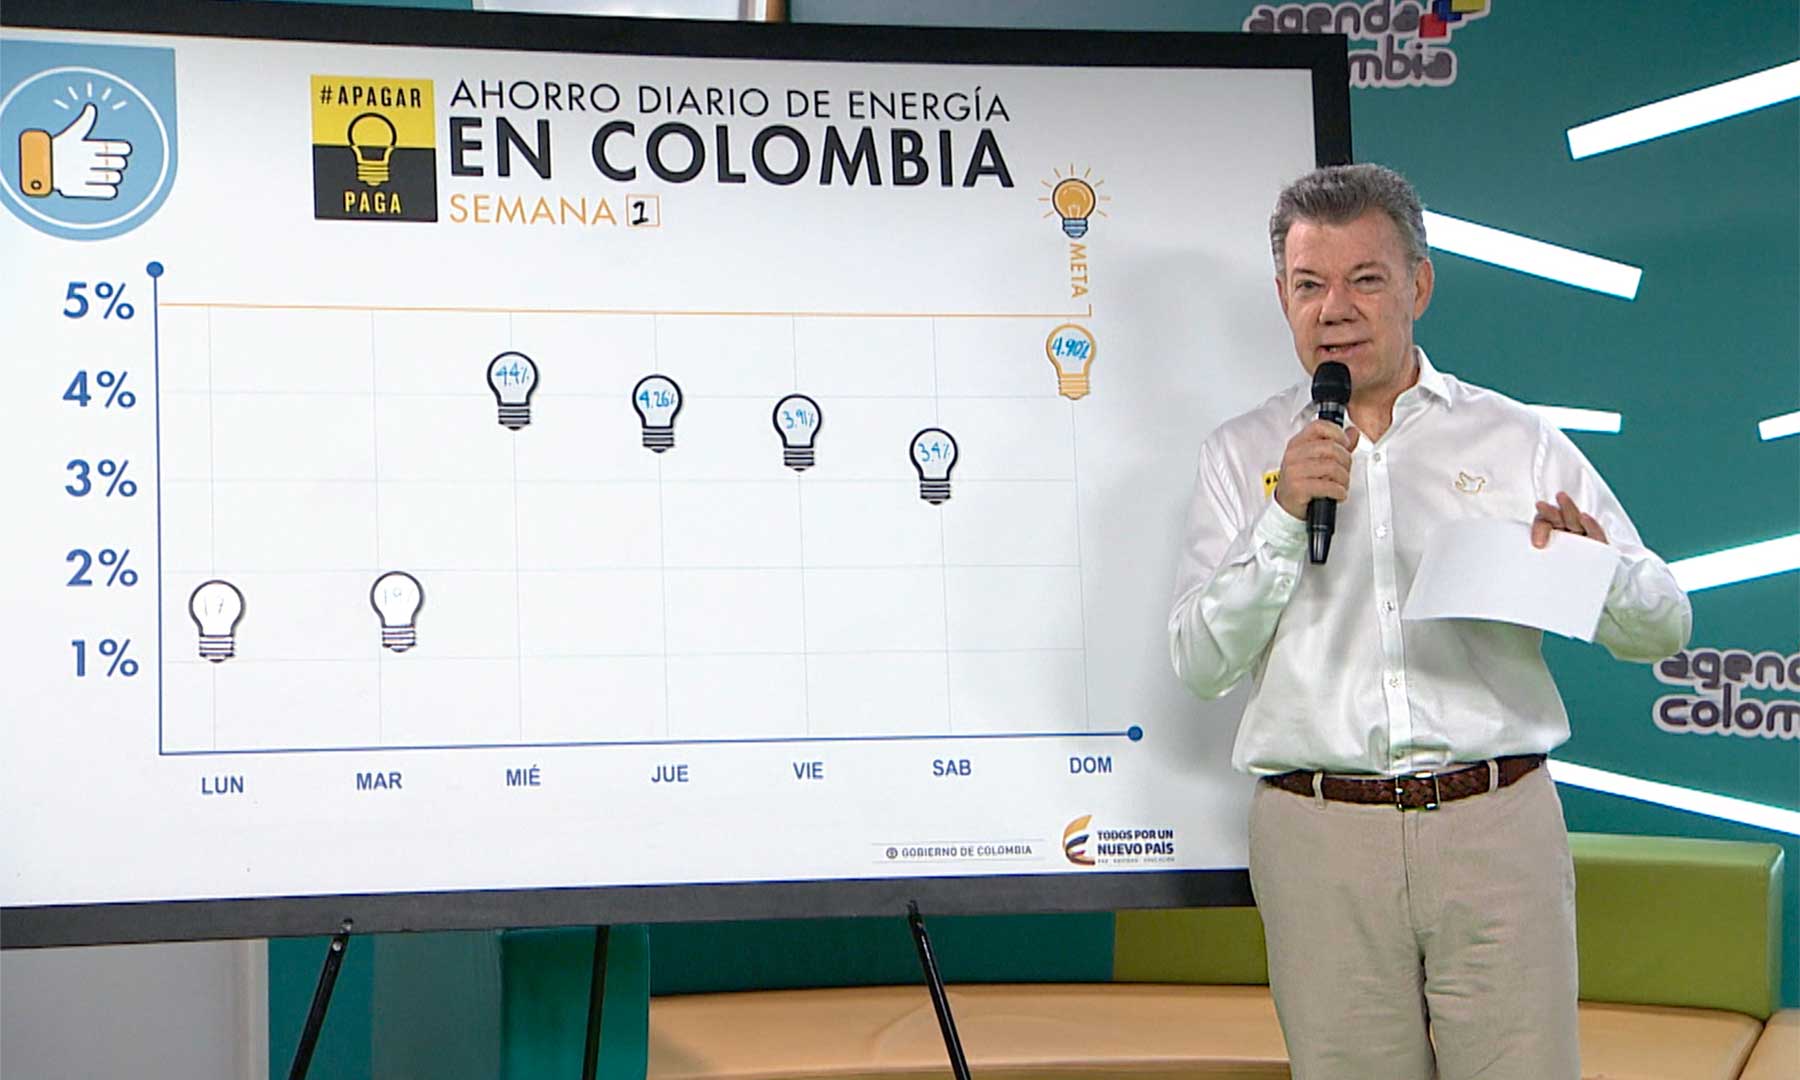 Nos estamos acercando a la meta de ahorro de energía. El domingo fue de 4,90 por ciento: Presidente Santos